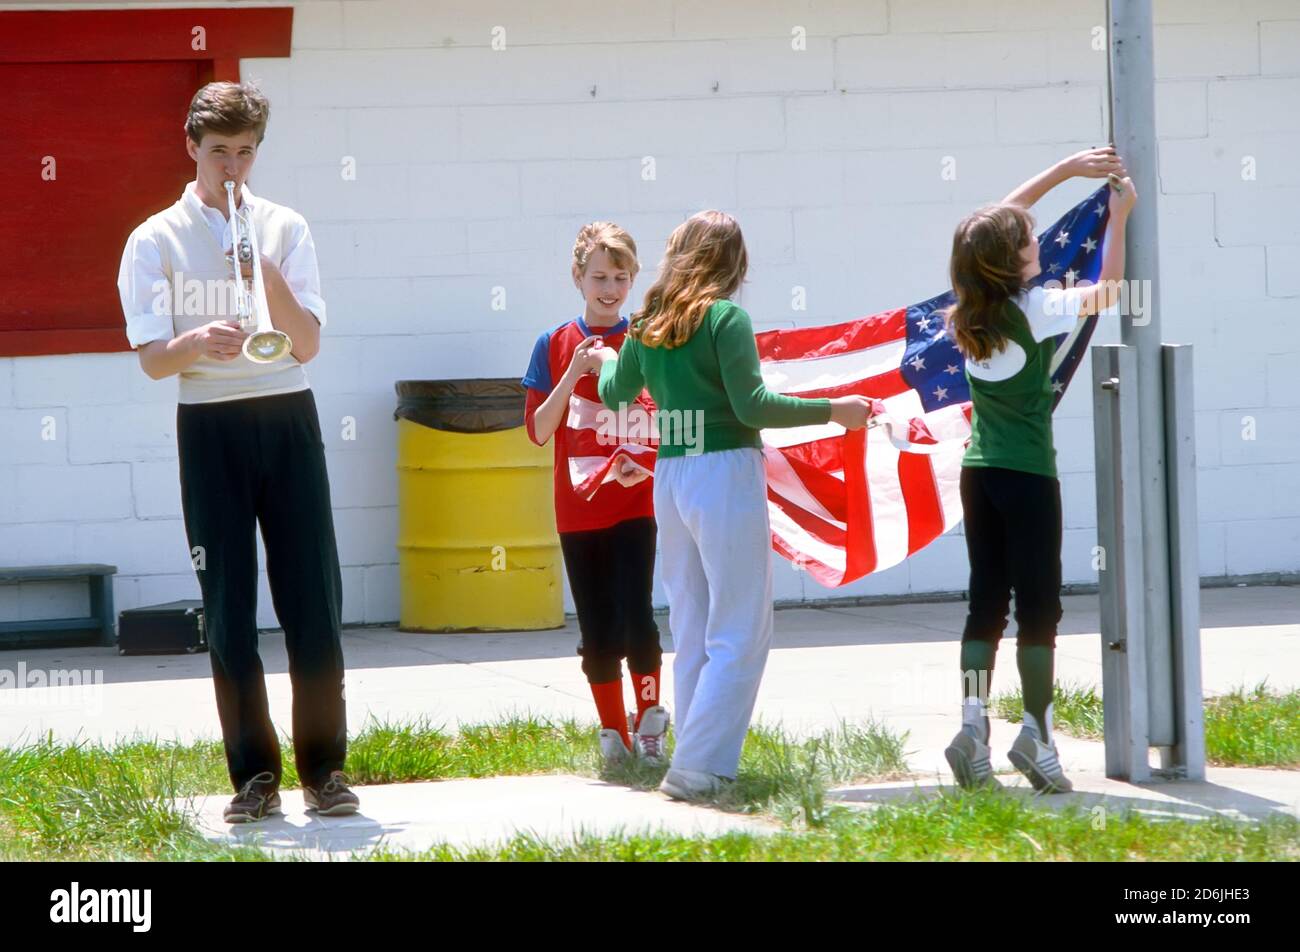 Un groupe d'enfants se réunit pour élever les américains drapeau des états-unis sur un poteau de drapeau Banque D'Images